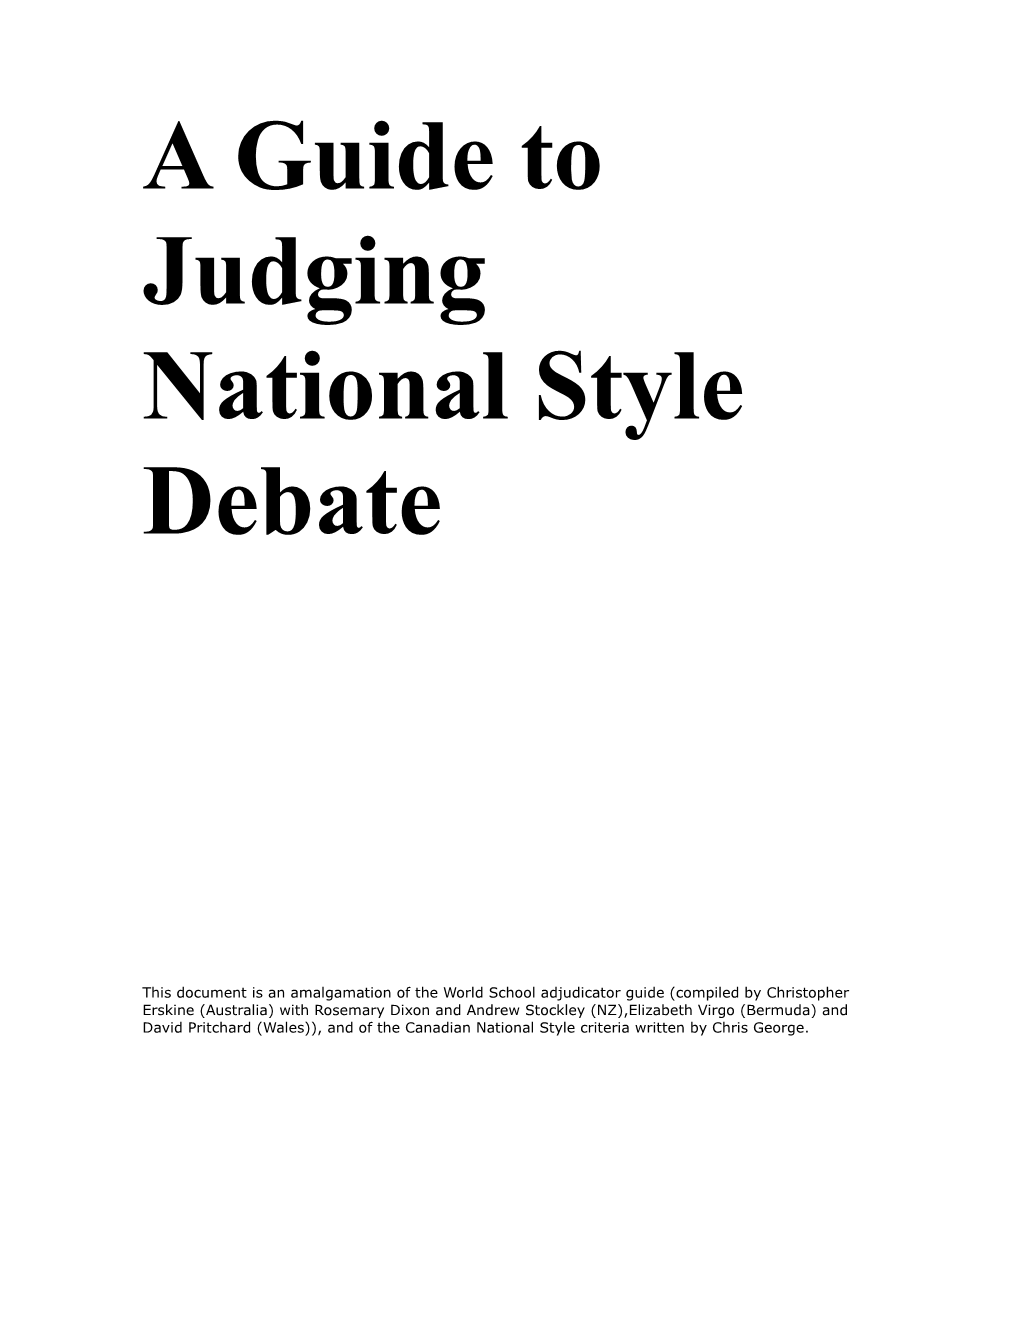 National Style Debate